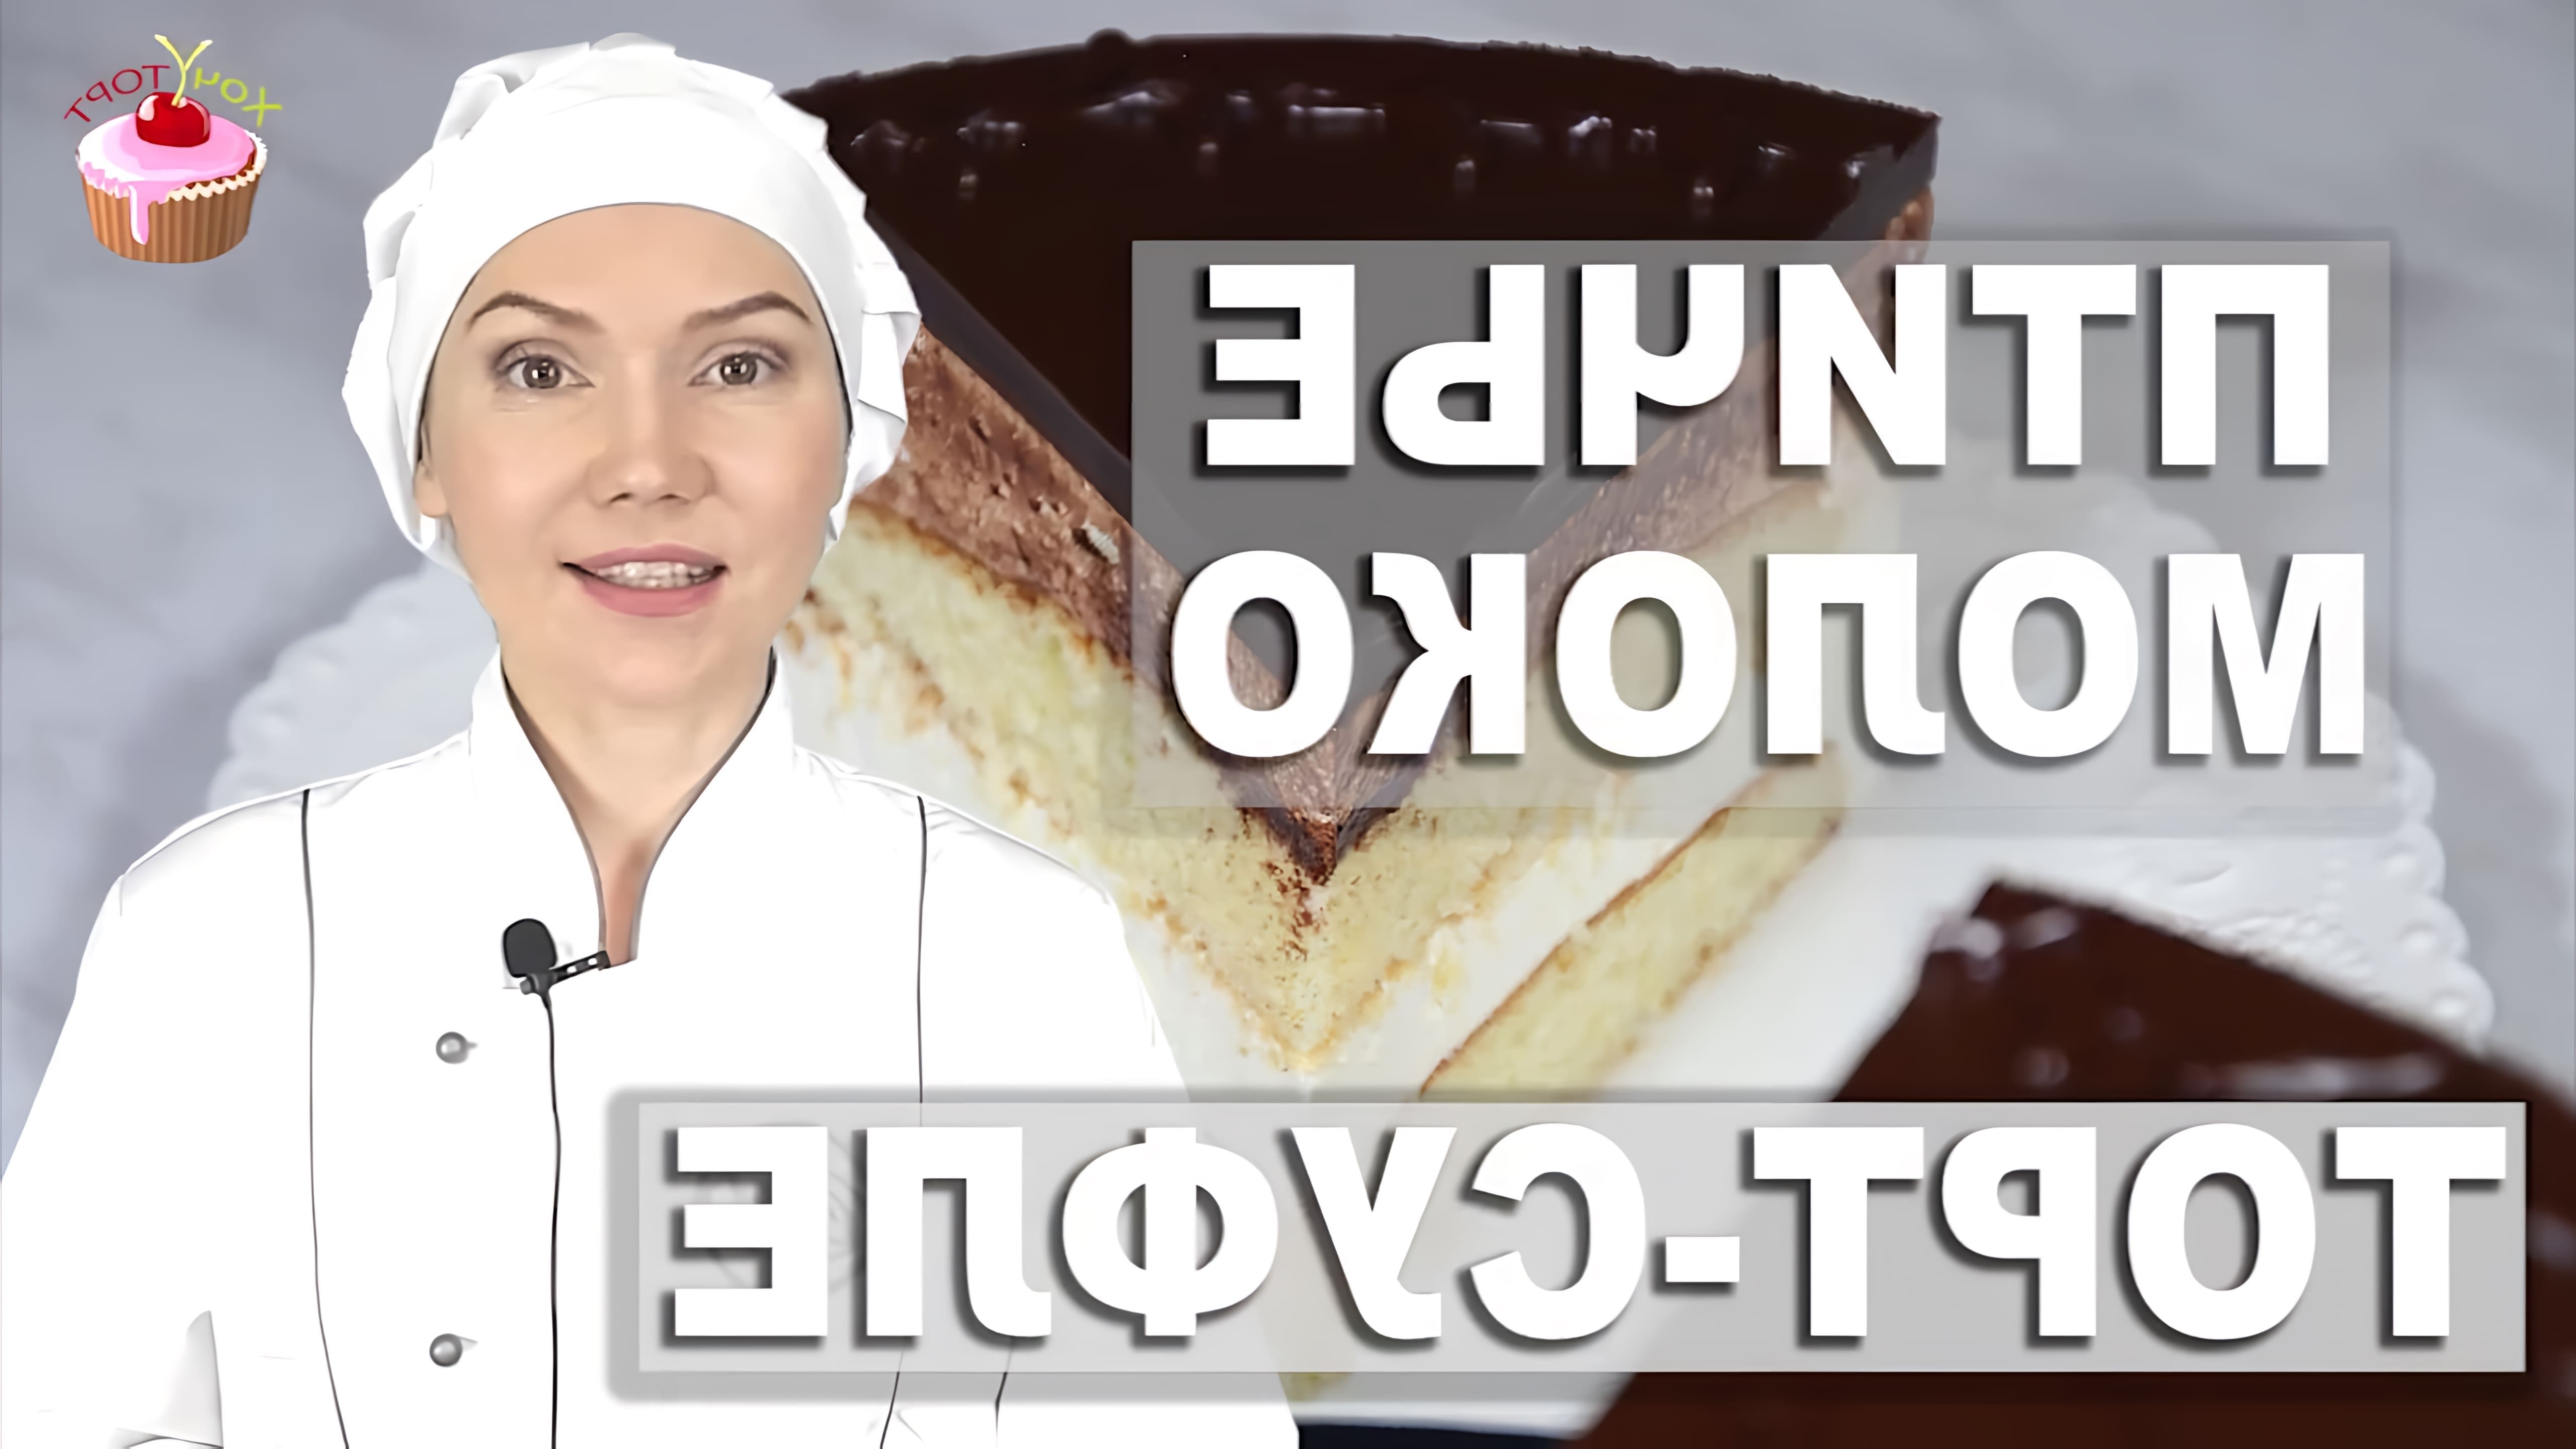 В этом видео представлен рецепт торта "Птичье молоко" с воздушным суфле и шоколадной глазурью